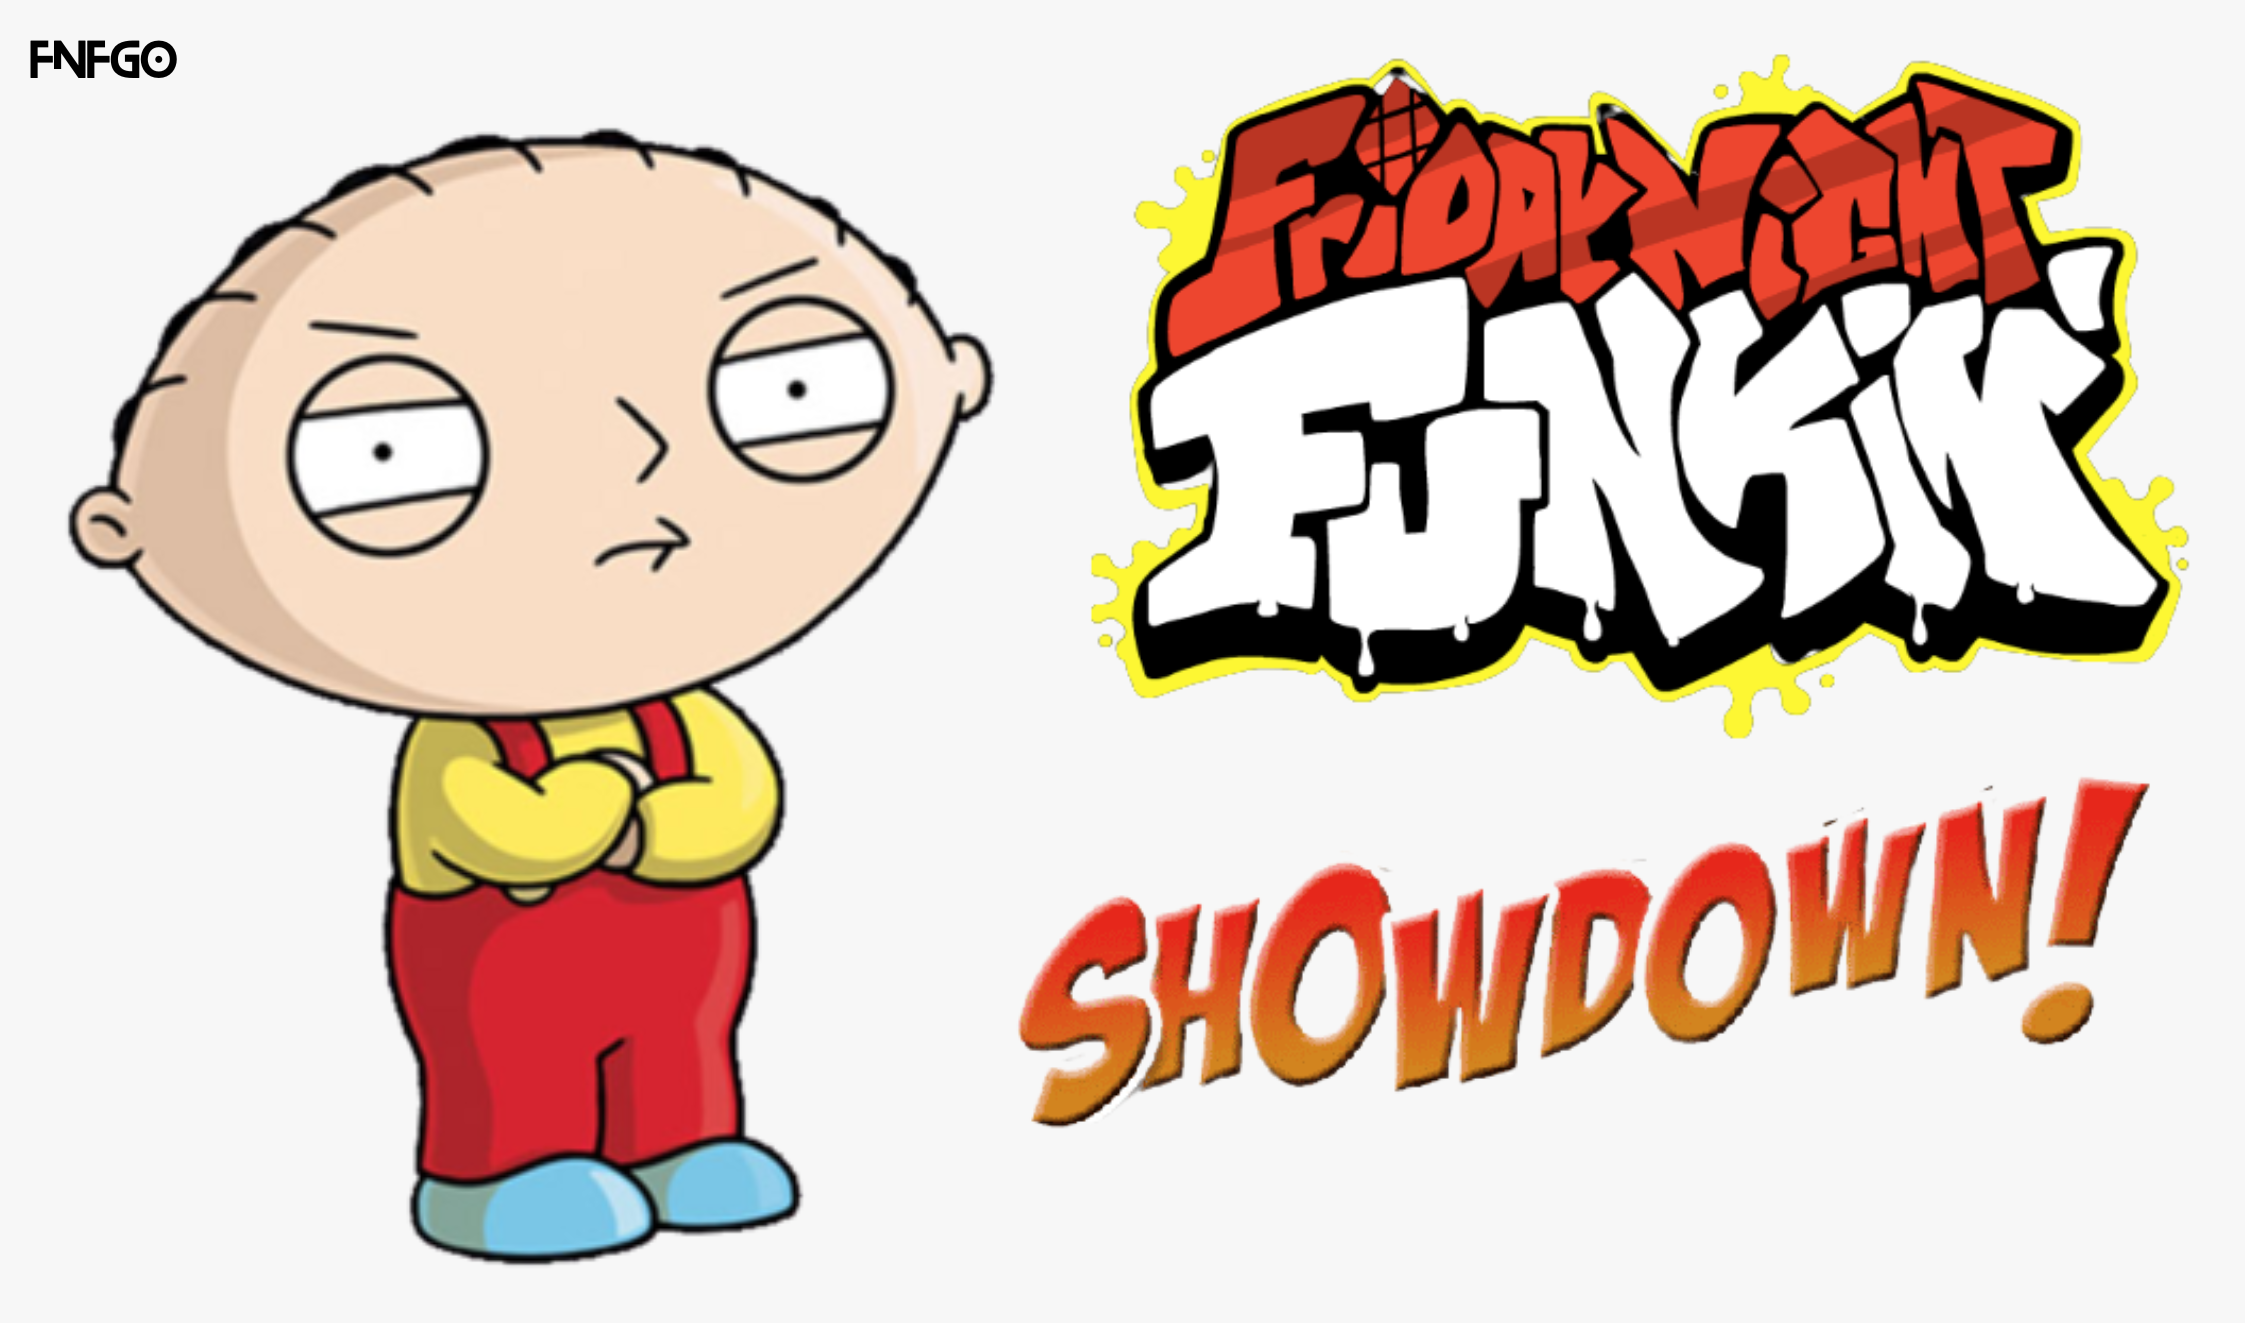 FNF Family Guy mods online - FNF vs Family Guy